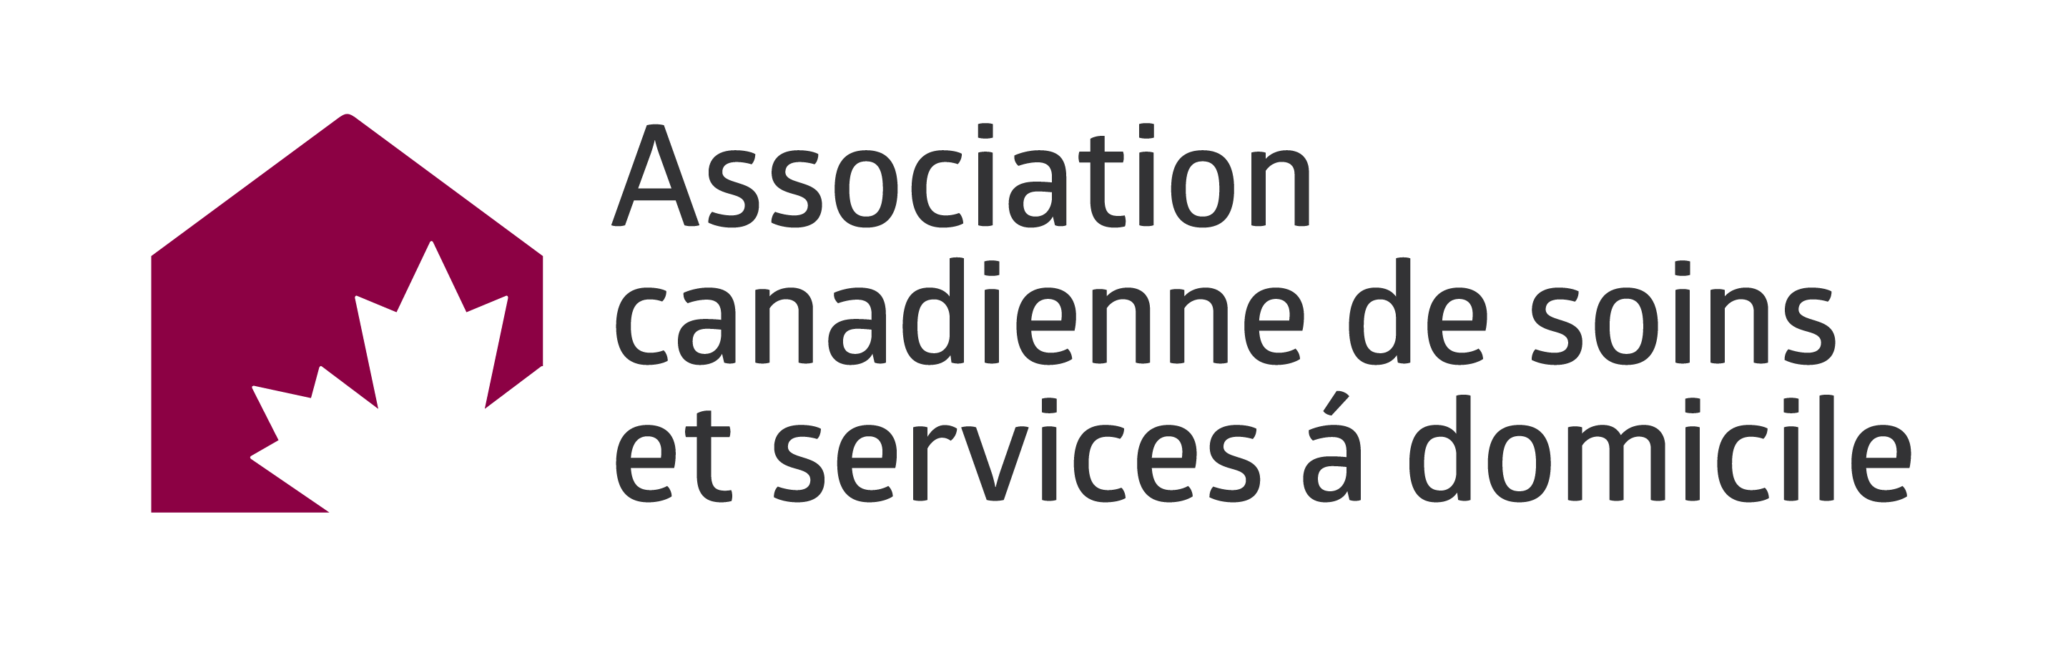 Association canadienne de soins et services à domicile - Logo